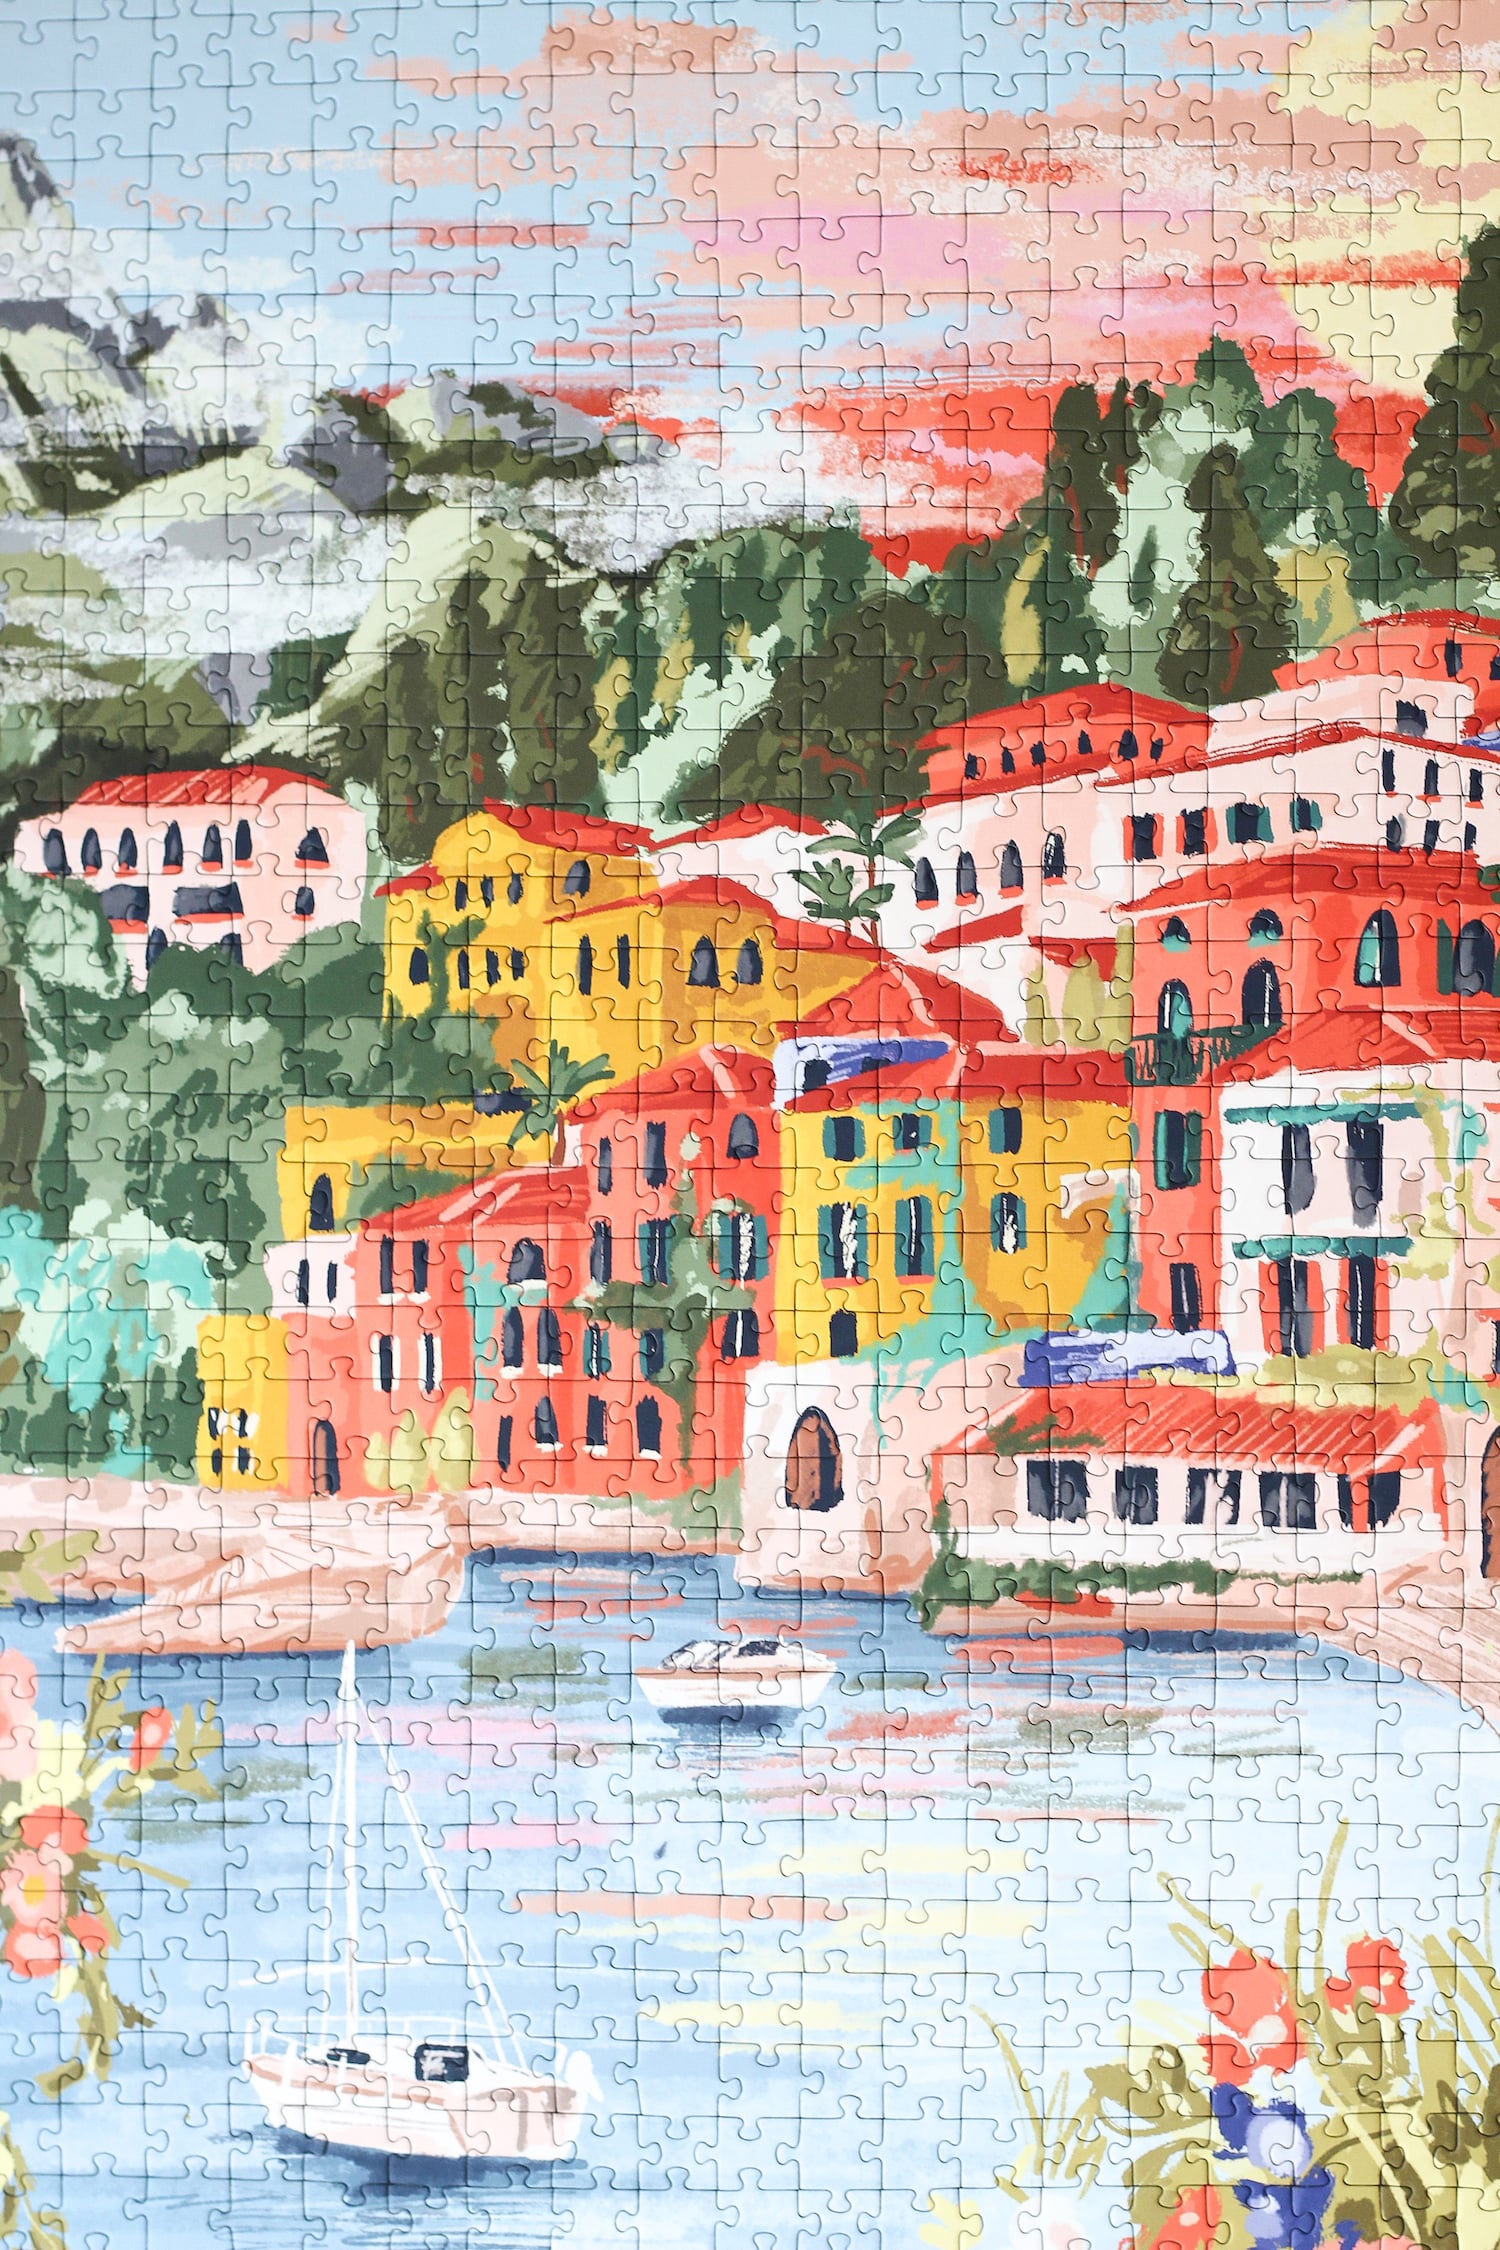 1000-teiliges Puzzle für Erwachsene, das den Comer See in Varenna zeigt. In der Bucht befinden sich zwei Boote und die Sicht auf den See ist gesäumt von bunten Häusern.